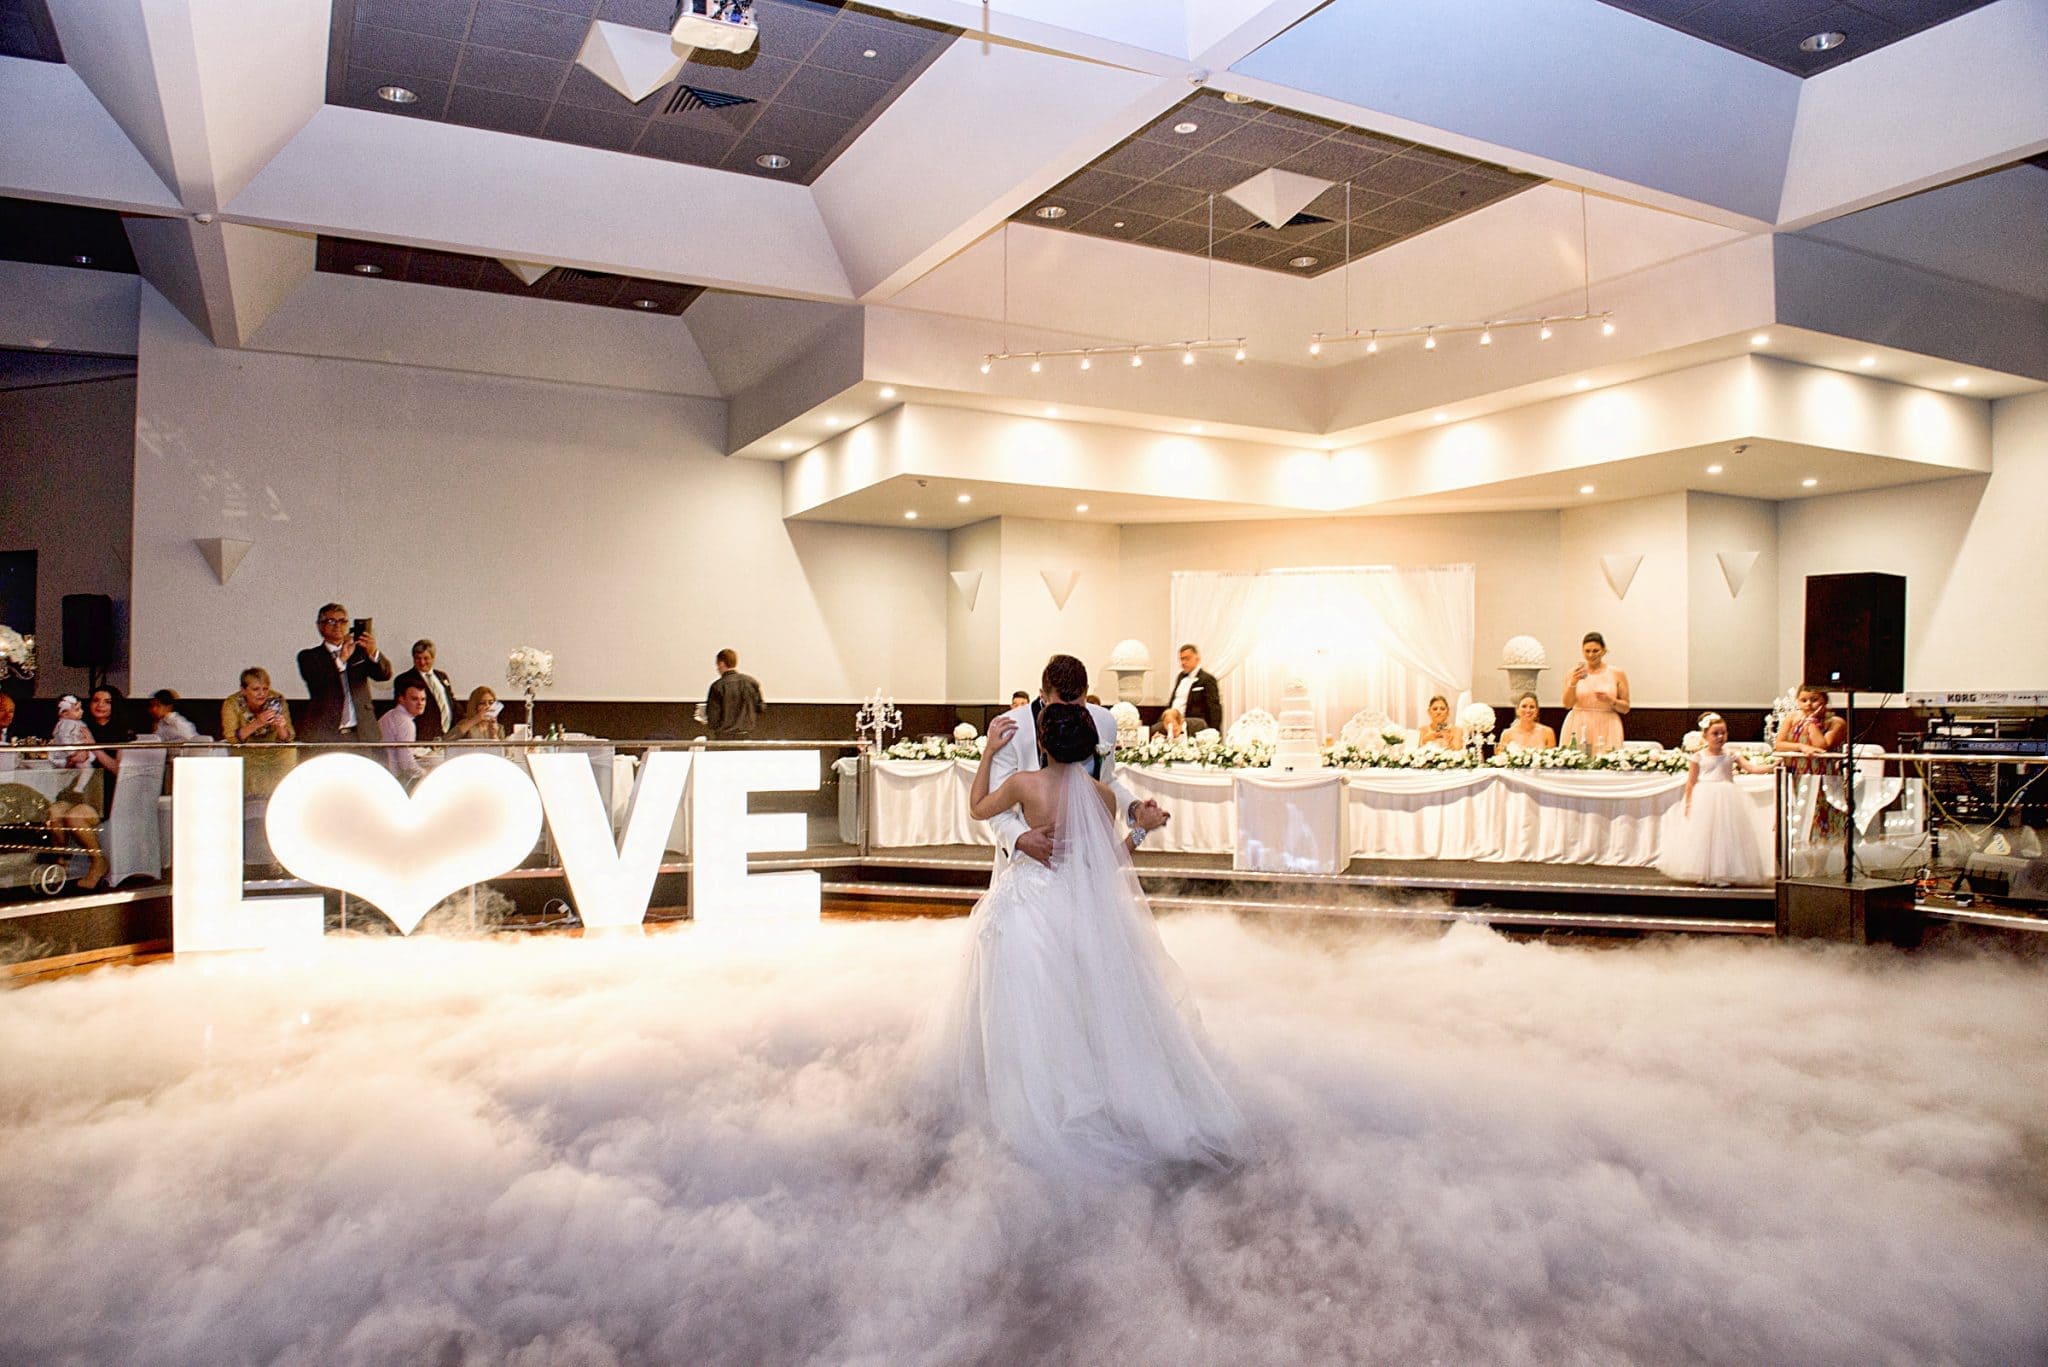 Wedding Venues South Australia Donato Reception Centre